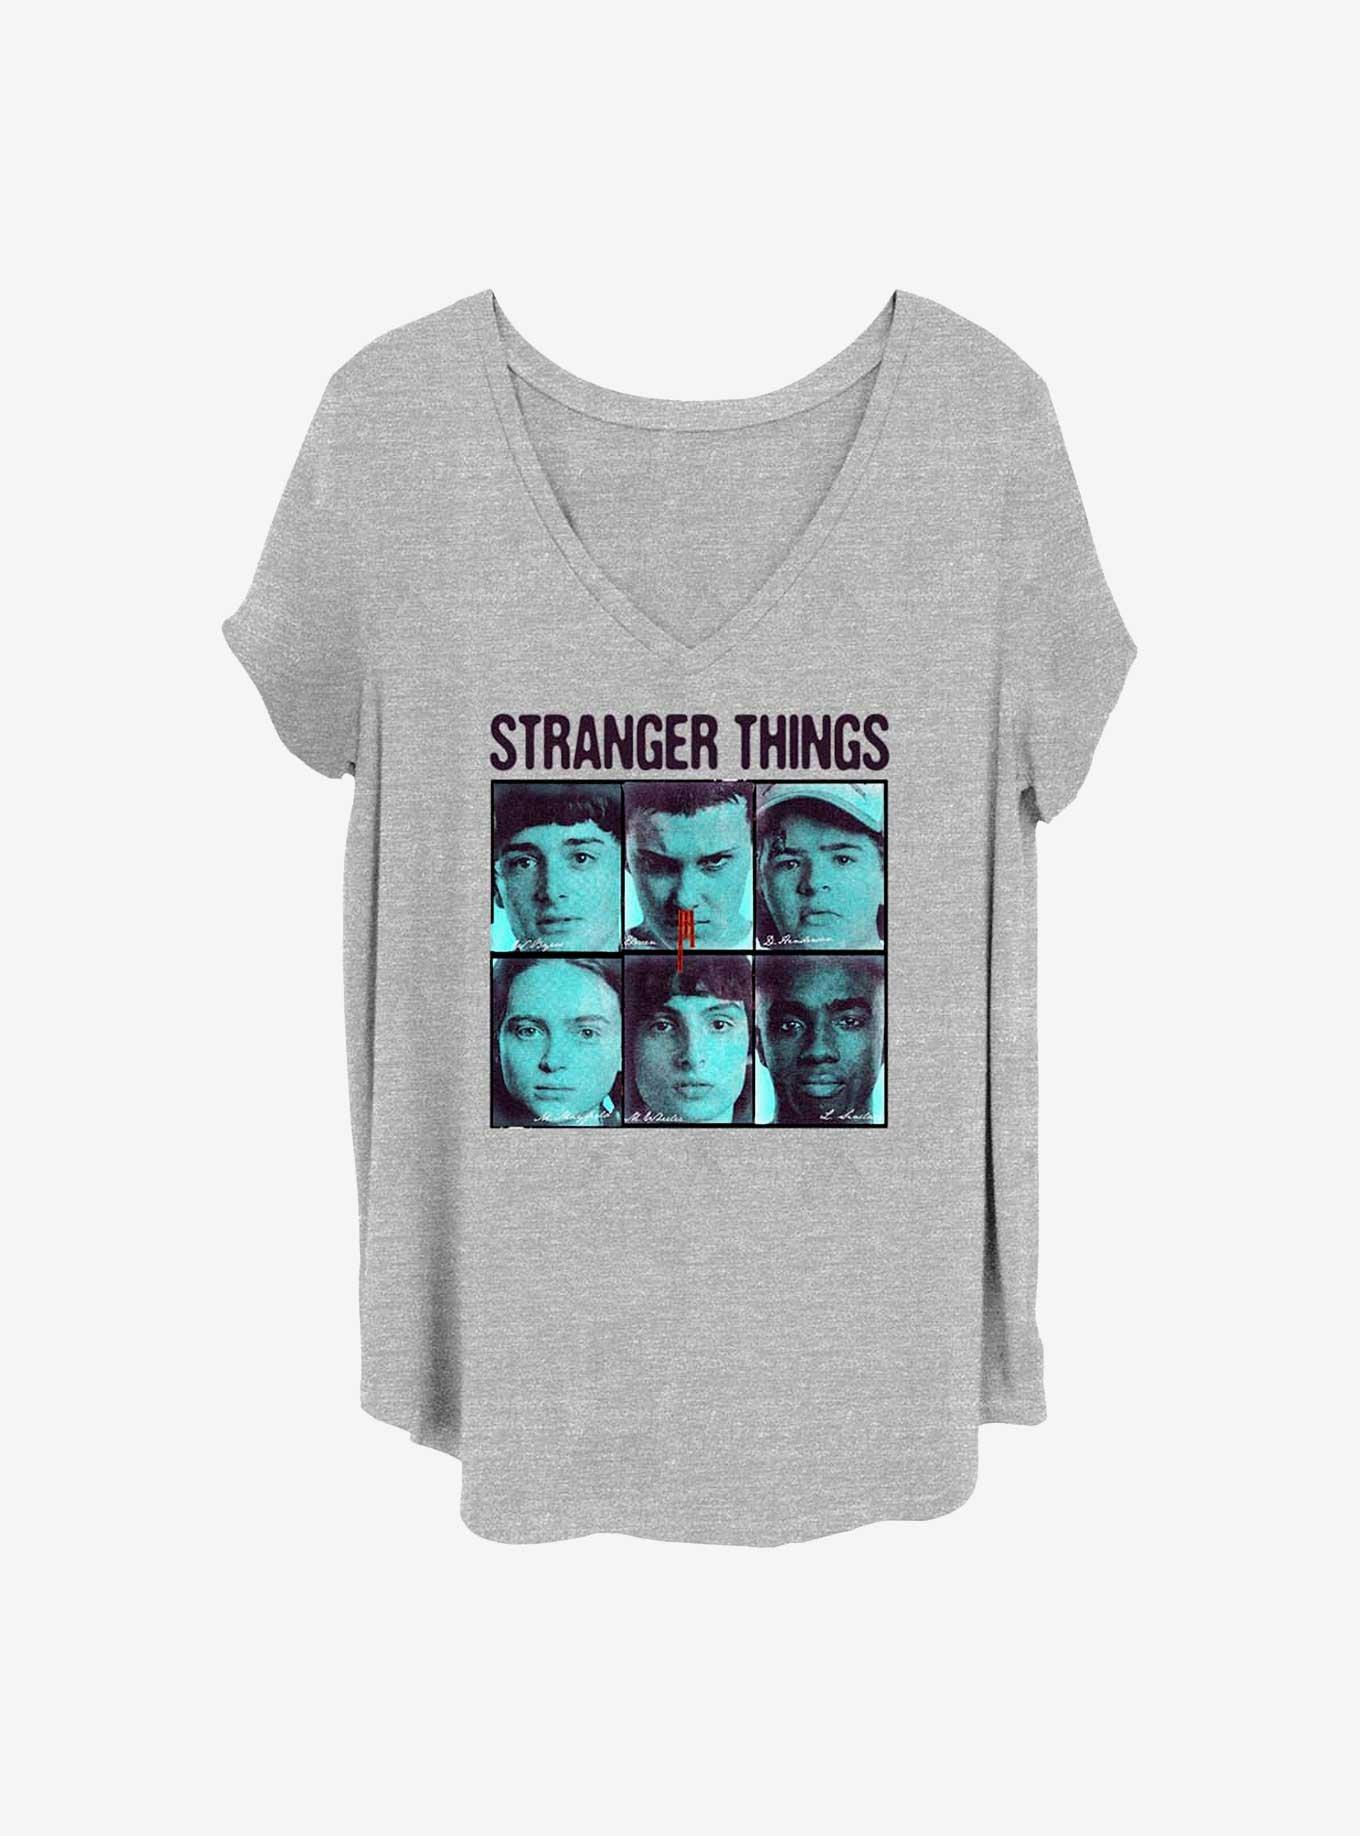 Stranger Things Halftone Gang Girls T-Shirt Plus